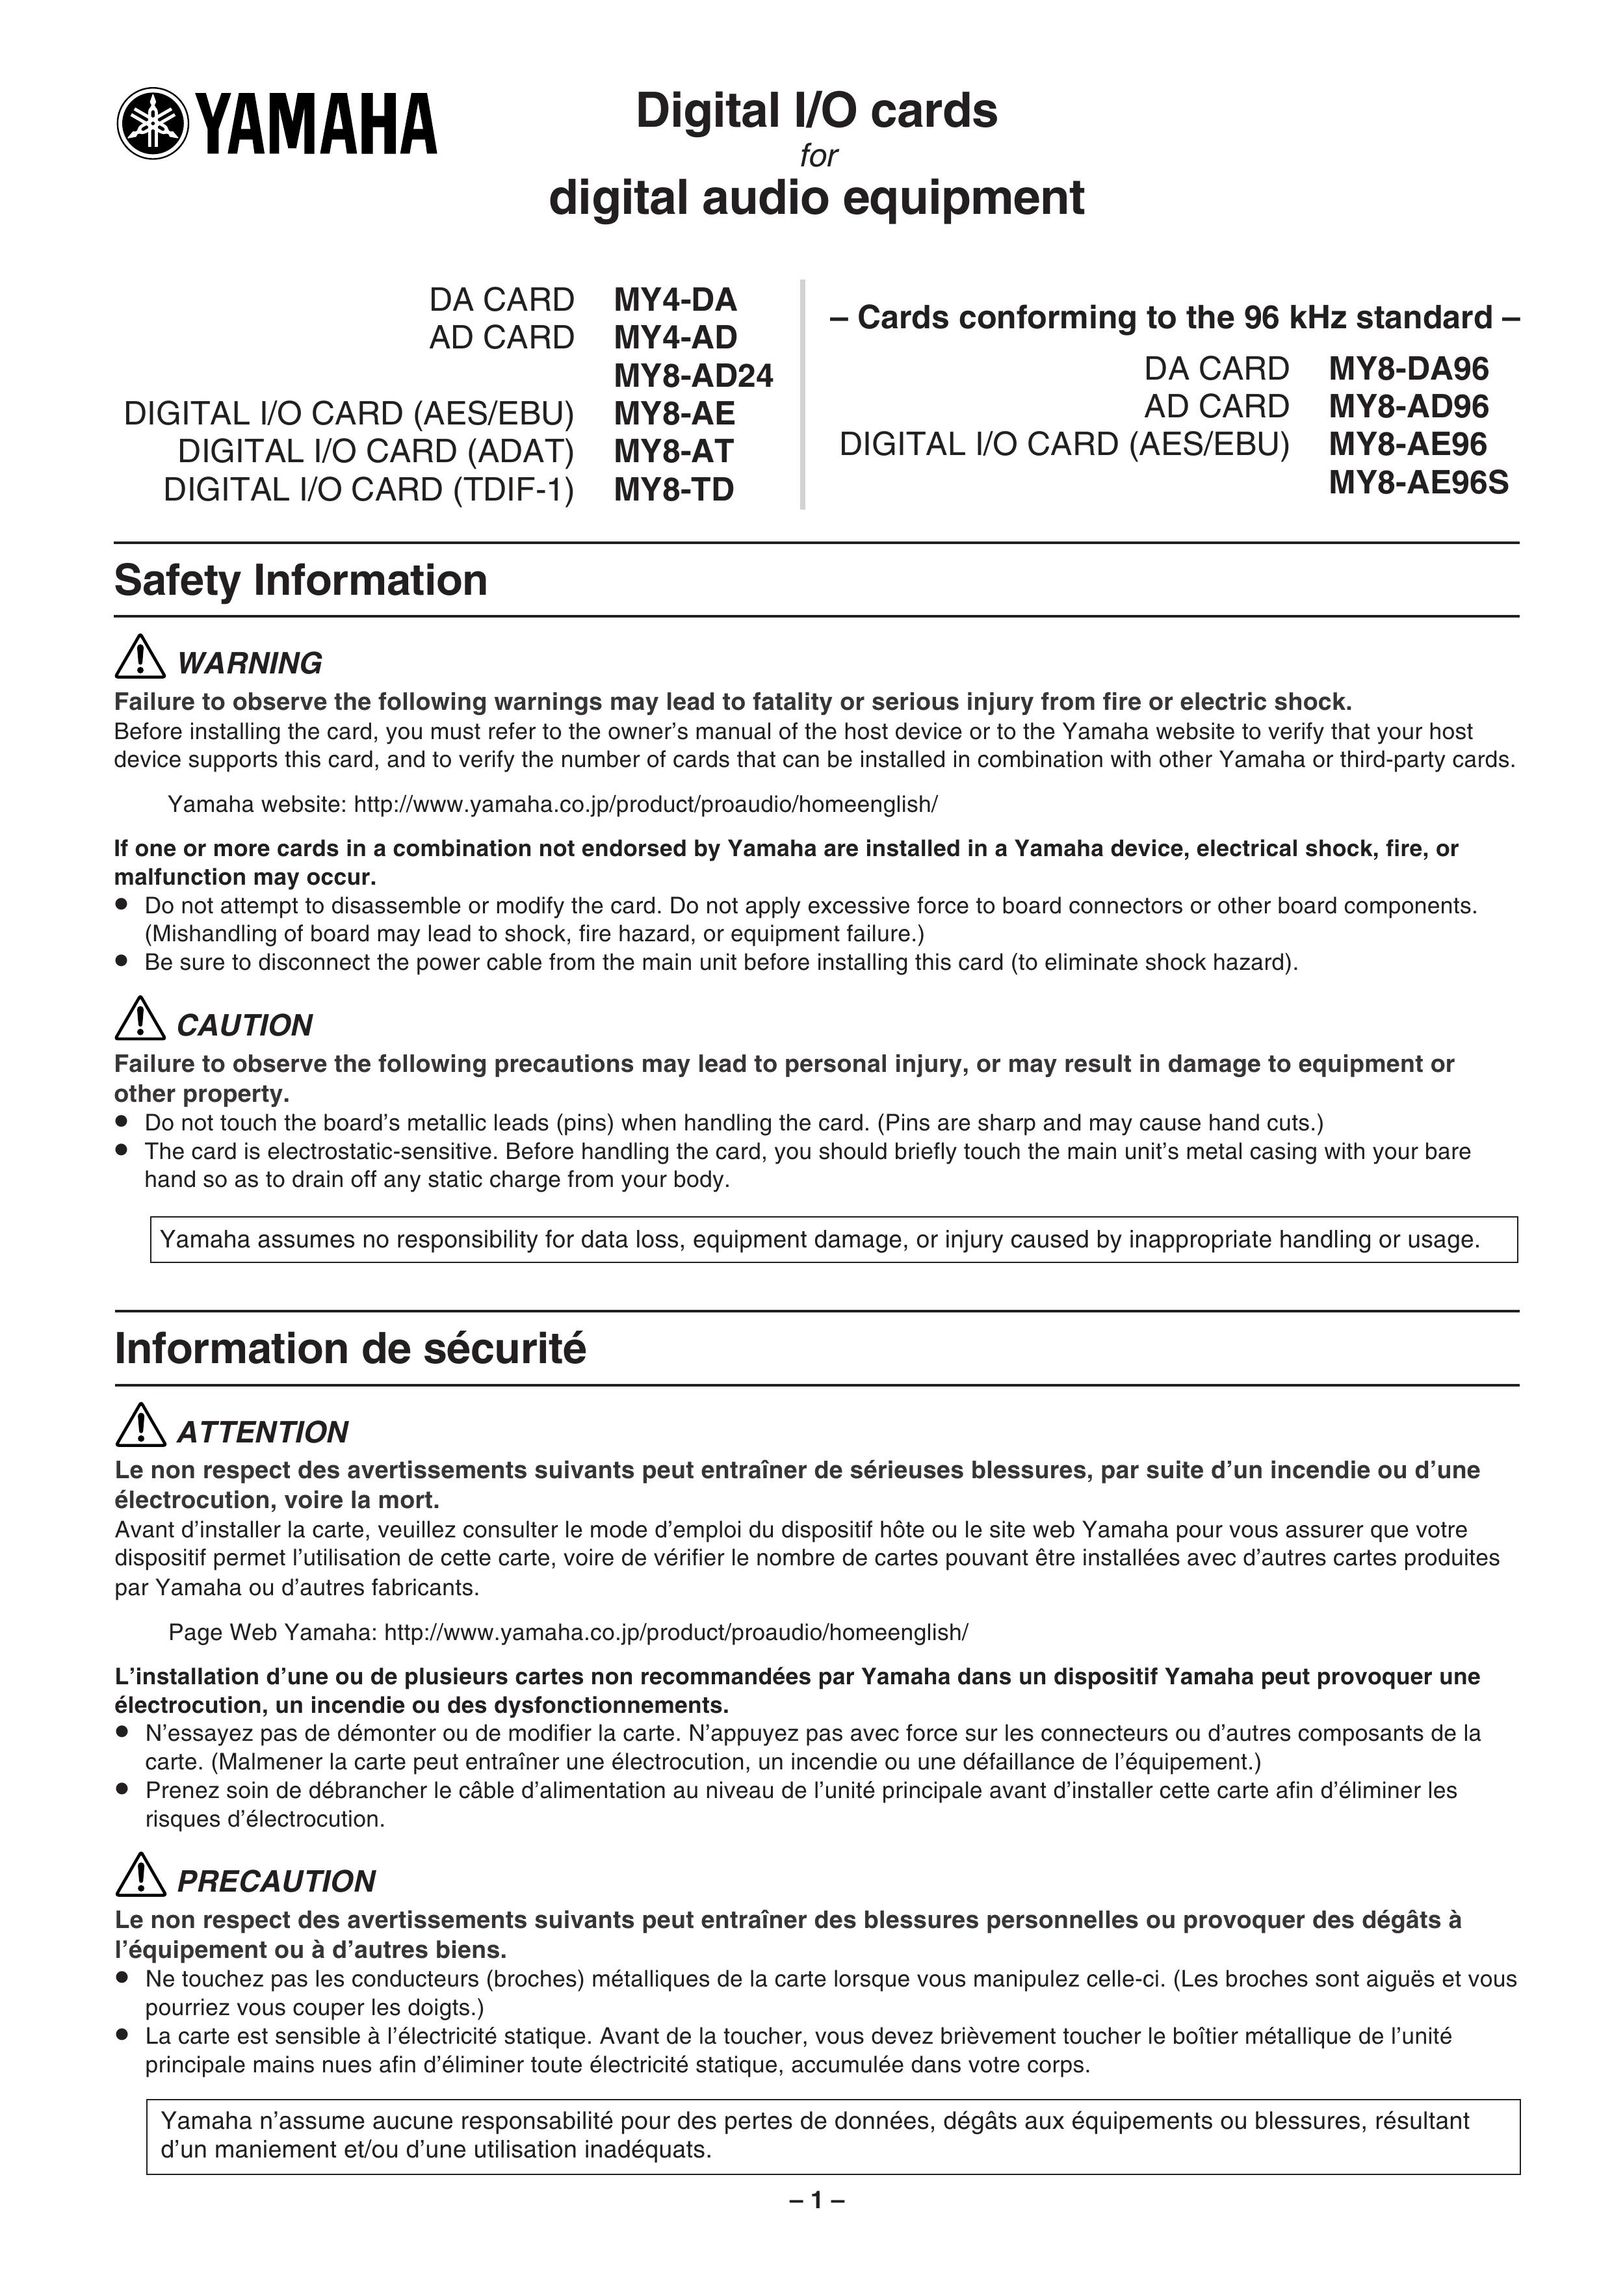 Yamaha MY8-DA96 Computer Hardware User Manual